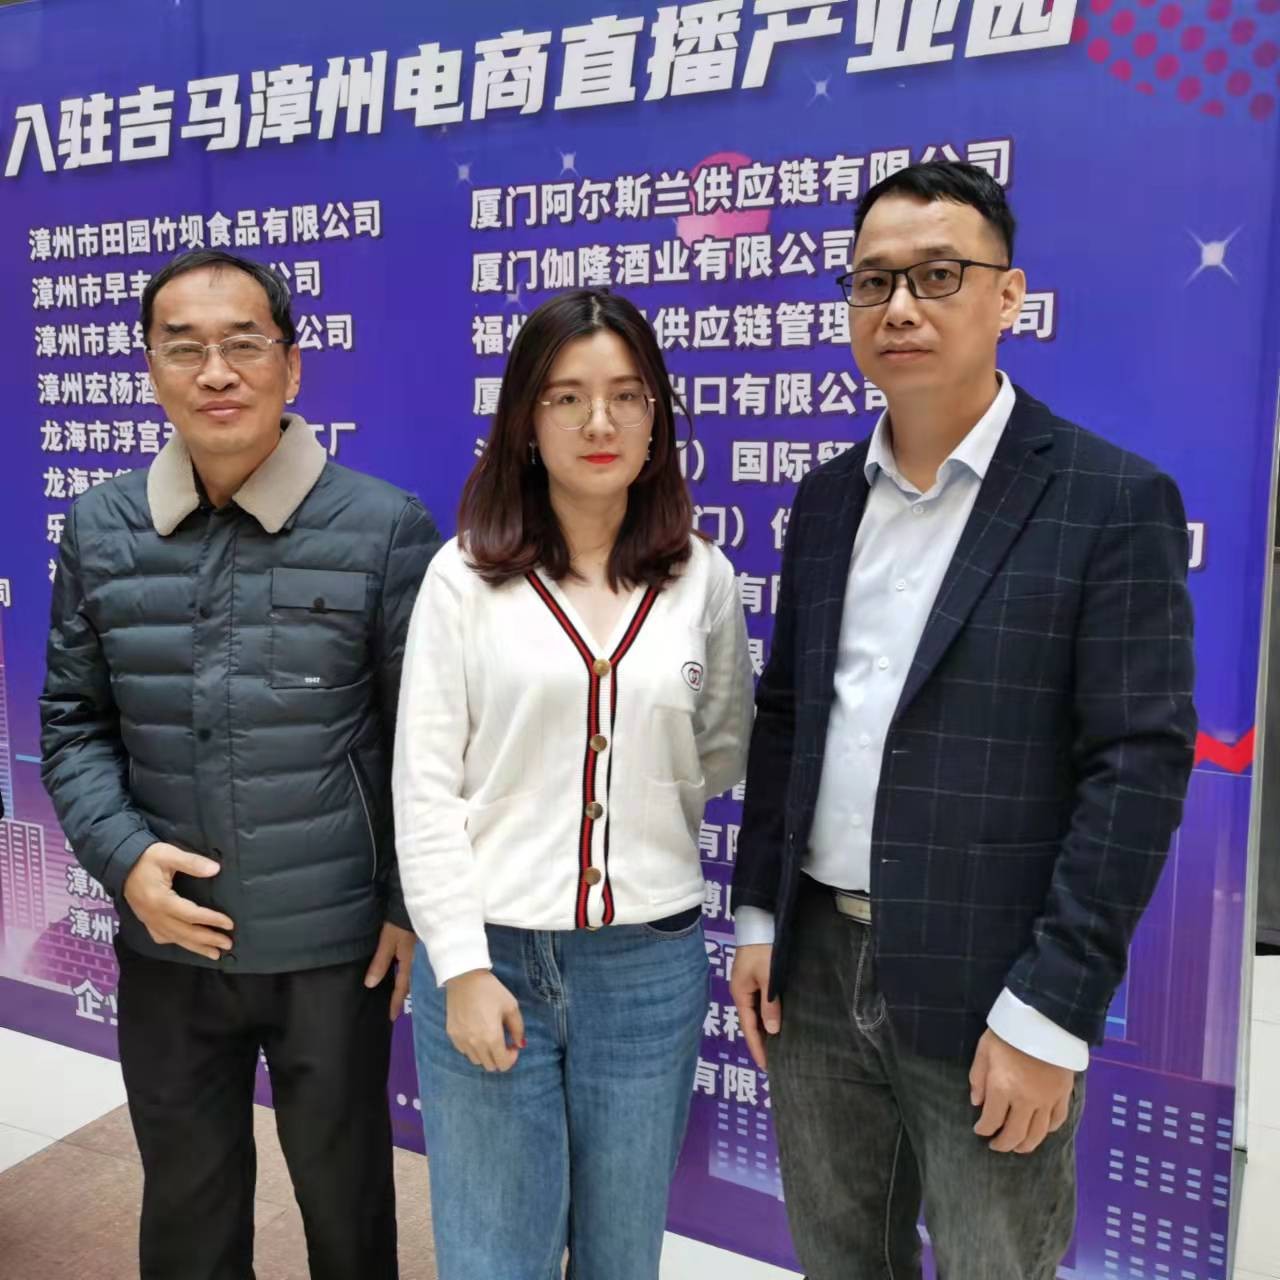 《快手直播2.0时代》主题沙龙分享13日在漳州成功举办